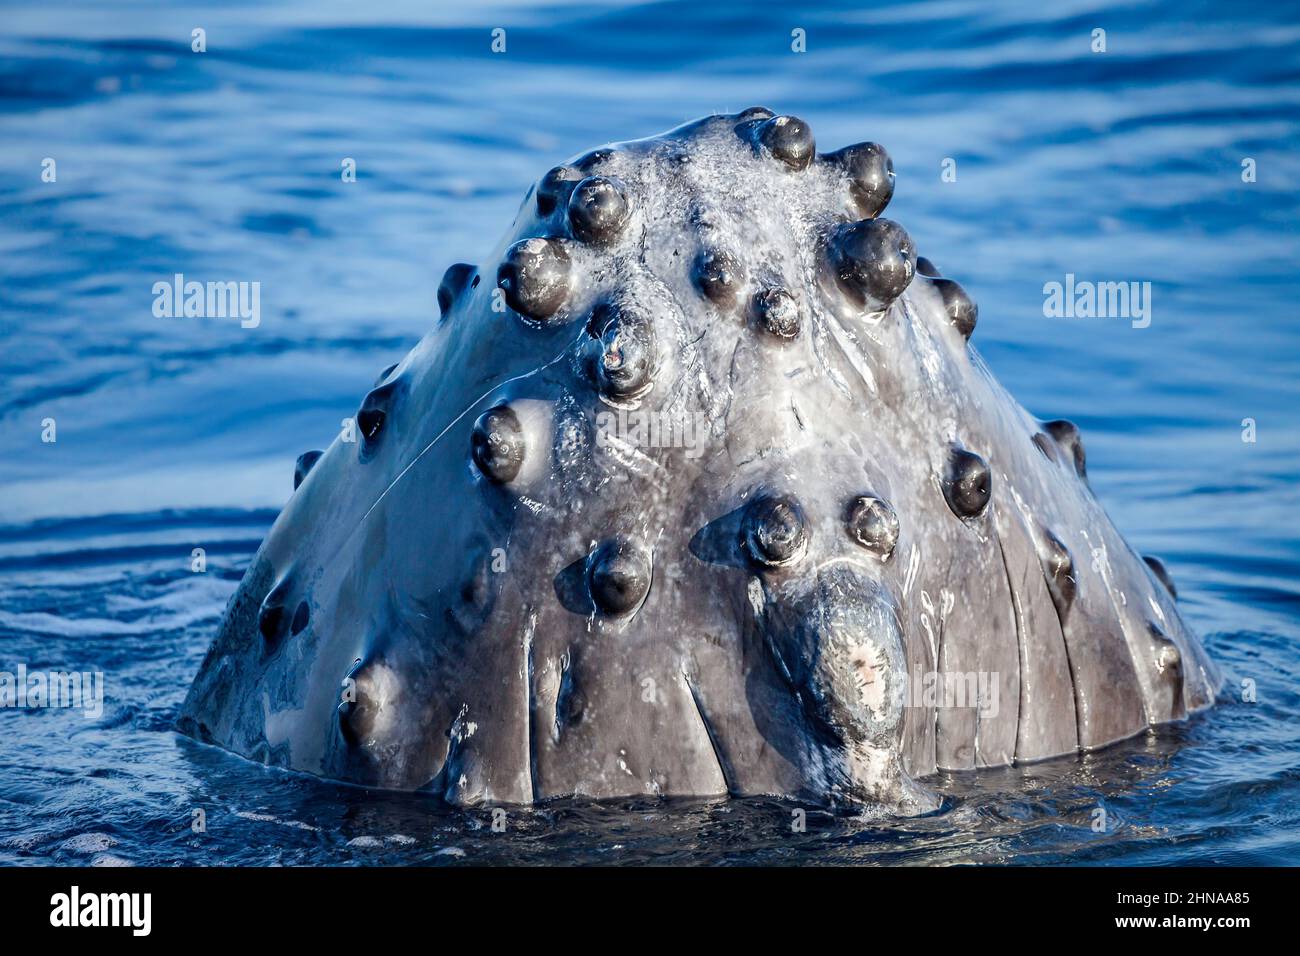 Un regard de près sur les boutons de forme bosse connus sous le nom de tubercules sur le menton d'une baleine à bosse, Megaptera novaeangliae. Chaque protubérance contient au moins on Banque D'Images